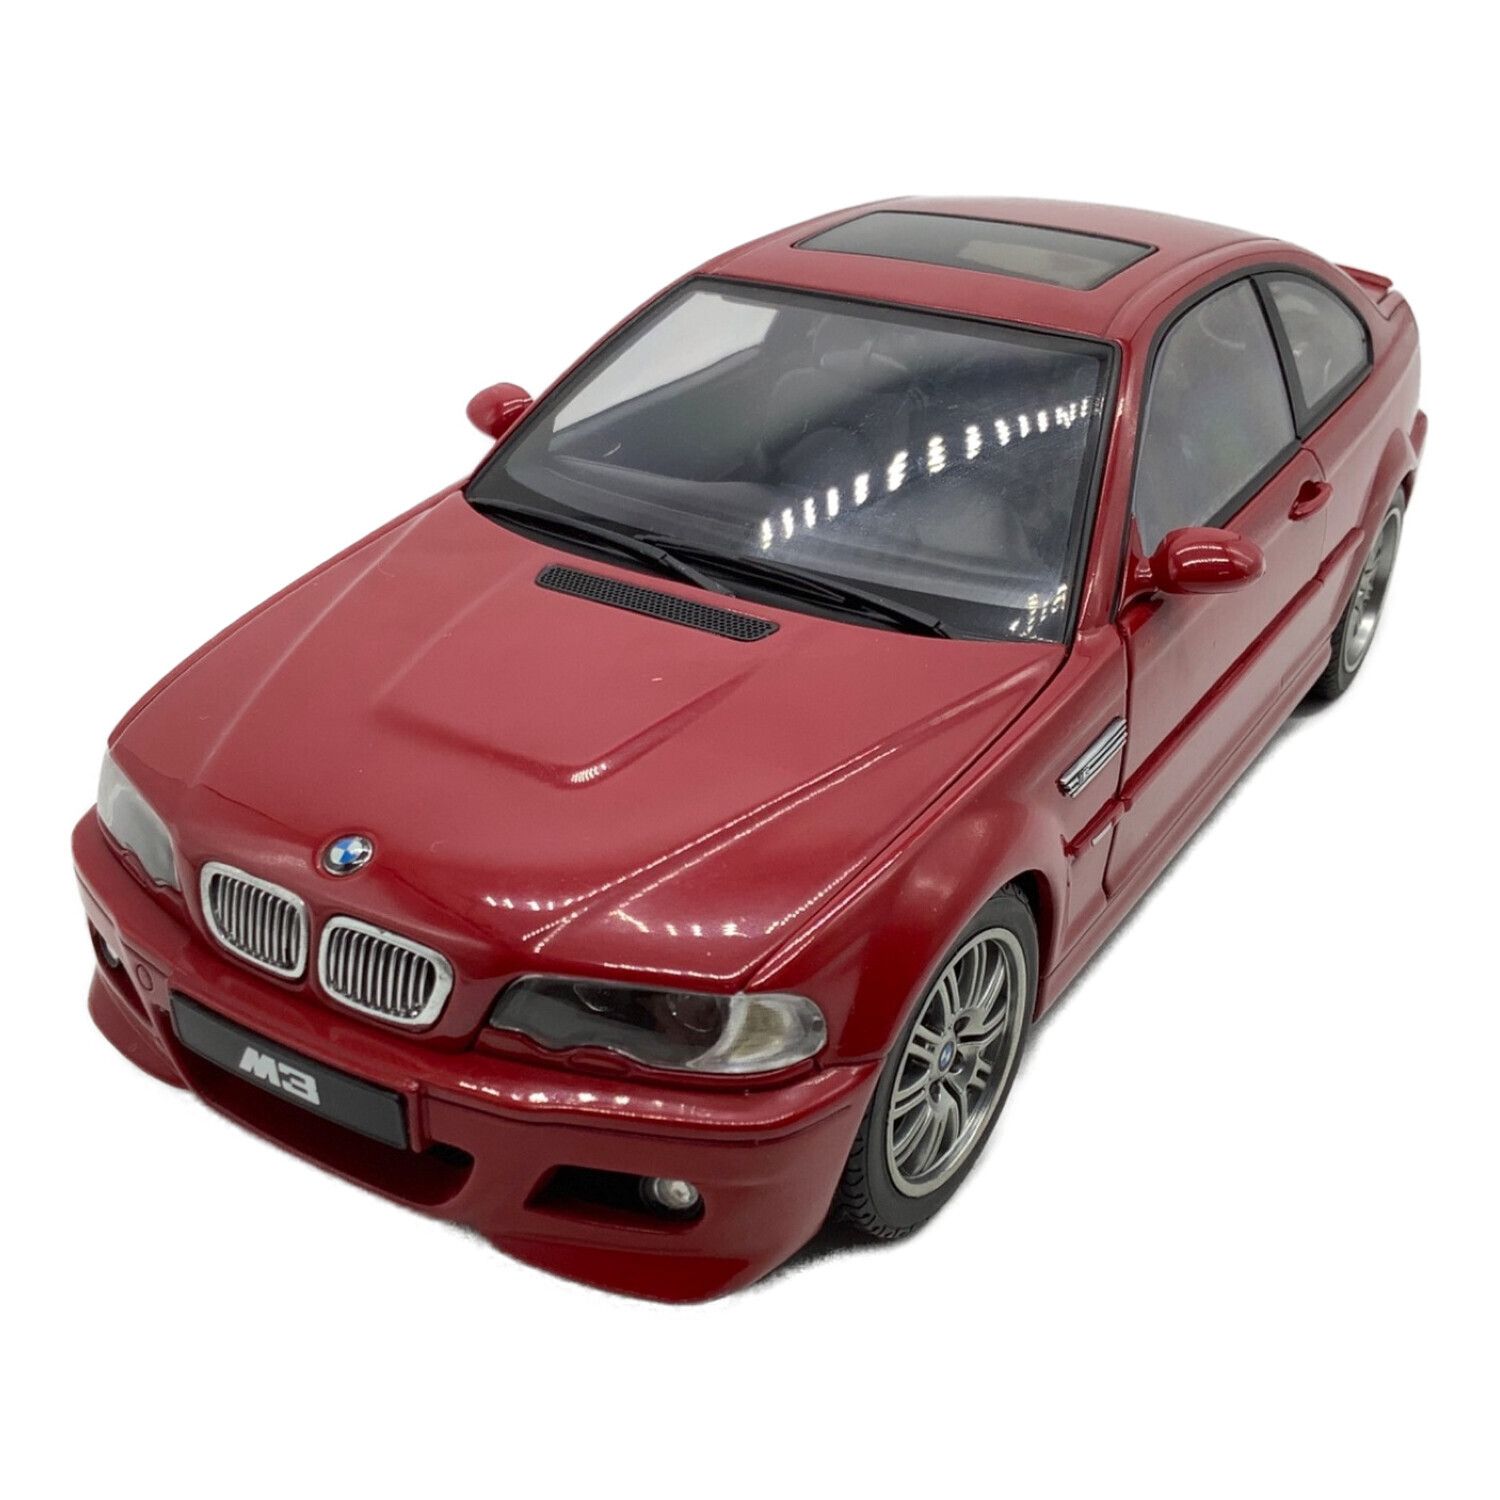 AUTOart (オートアート) モデルカー 1/18スケール BMW E46 M3